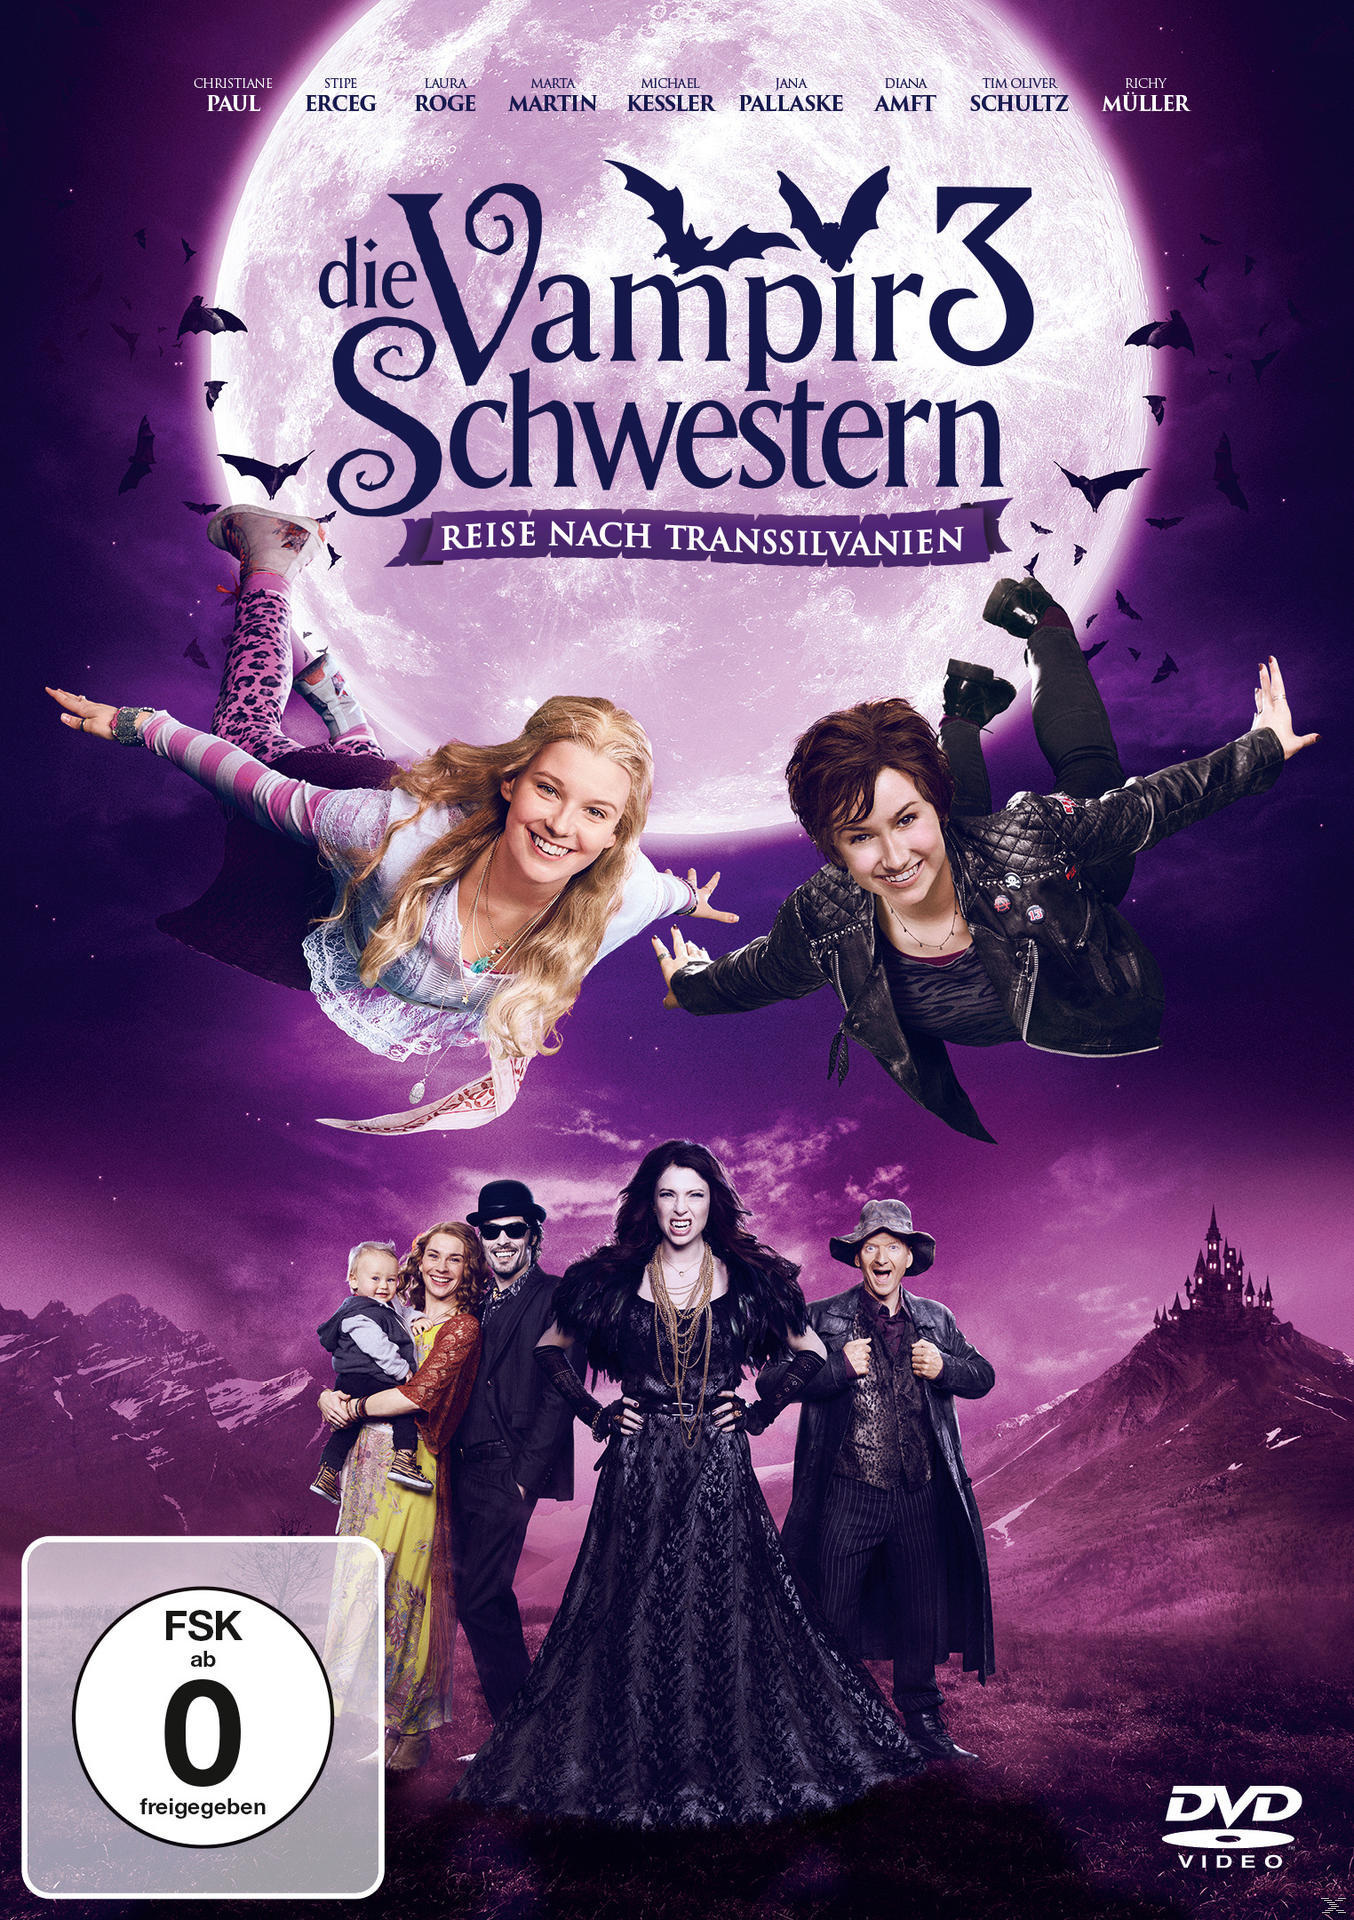 Die Vampirschwestern 3 - DVD Reise nach Transsilvanien